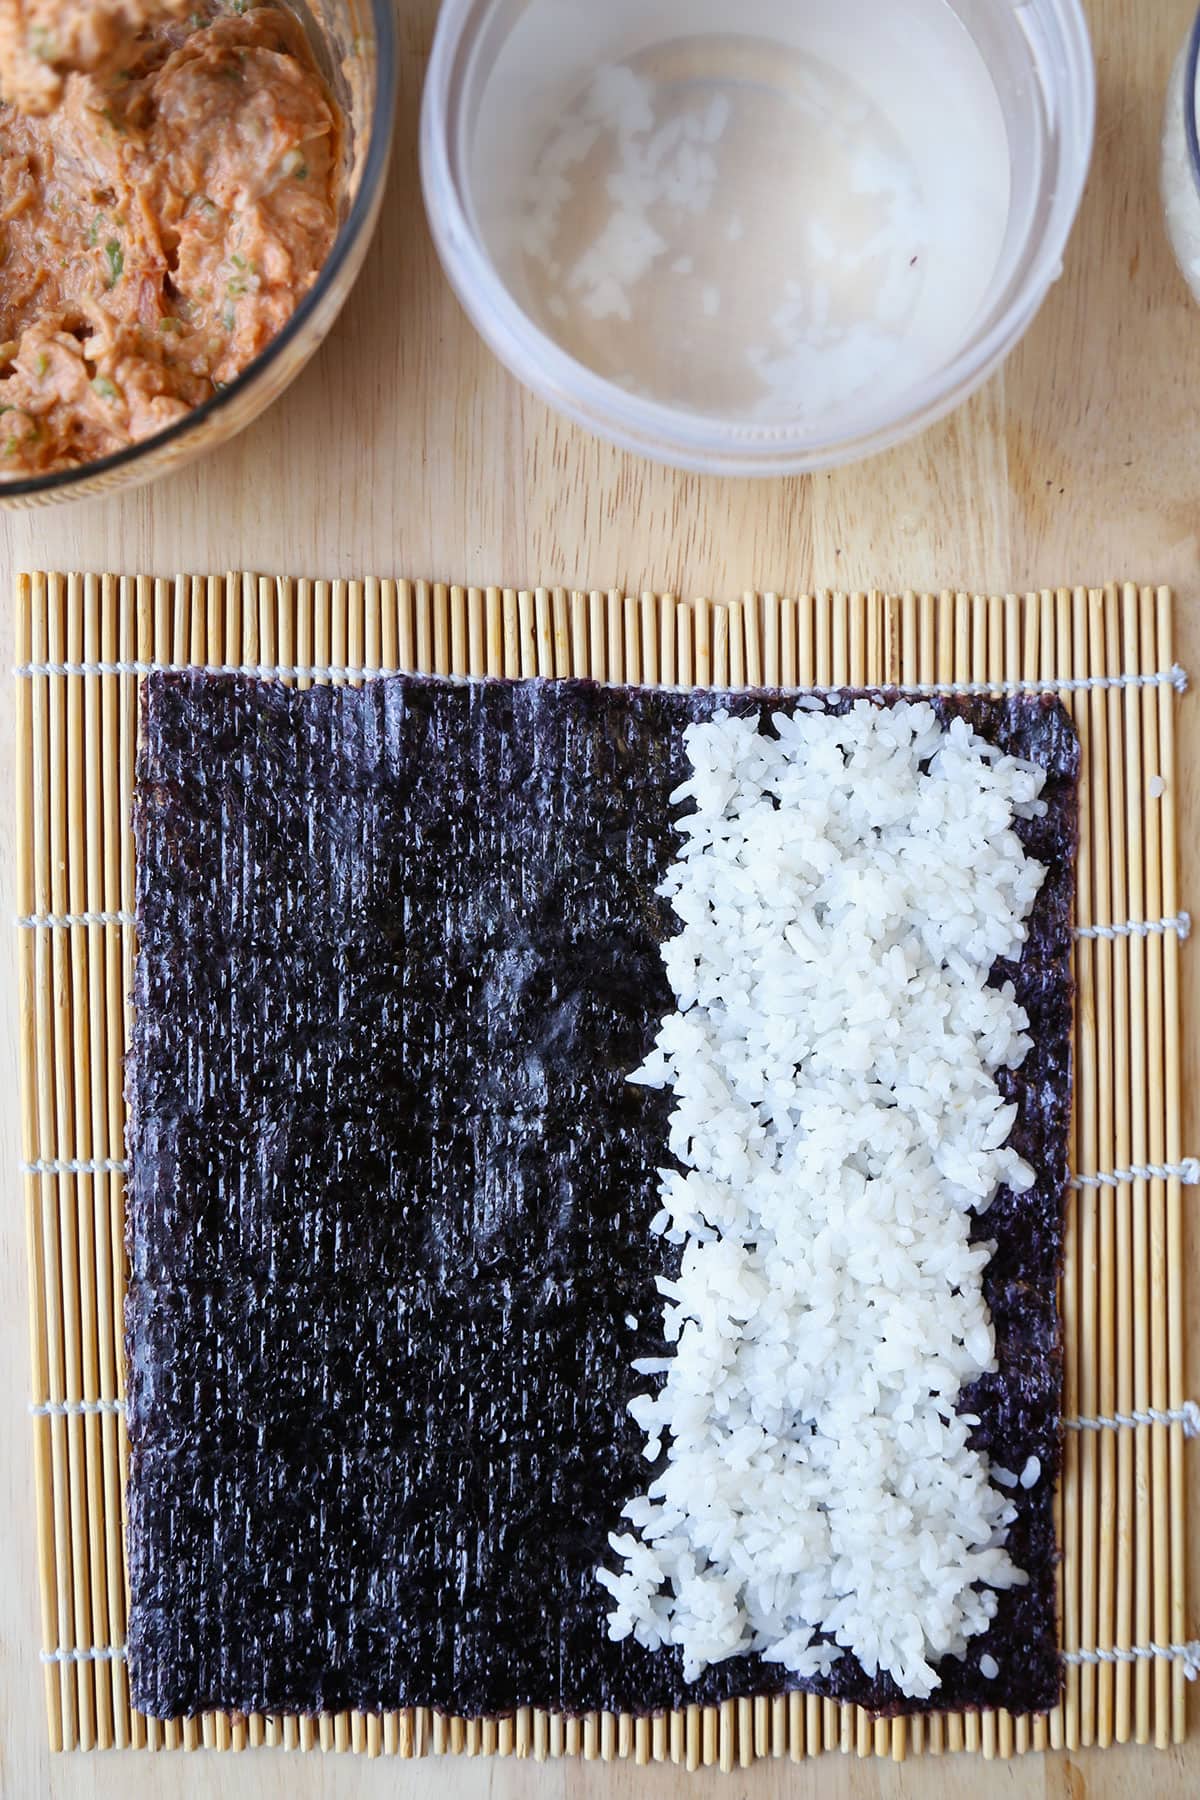 nori and rice over bamboo mat